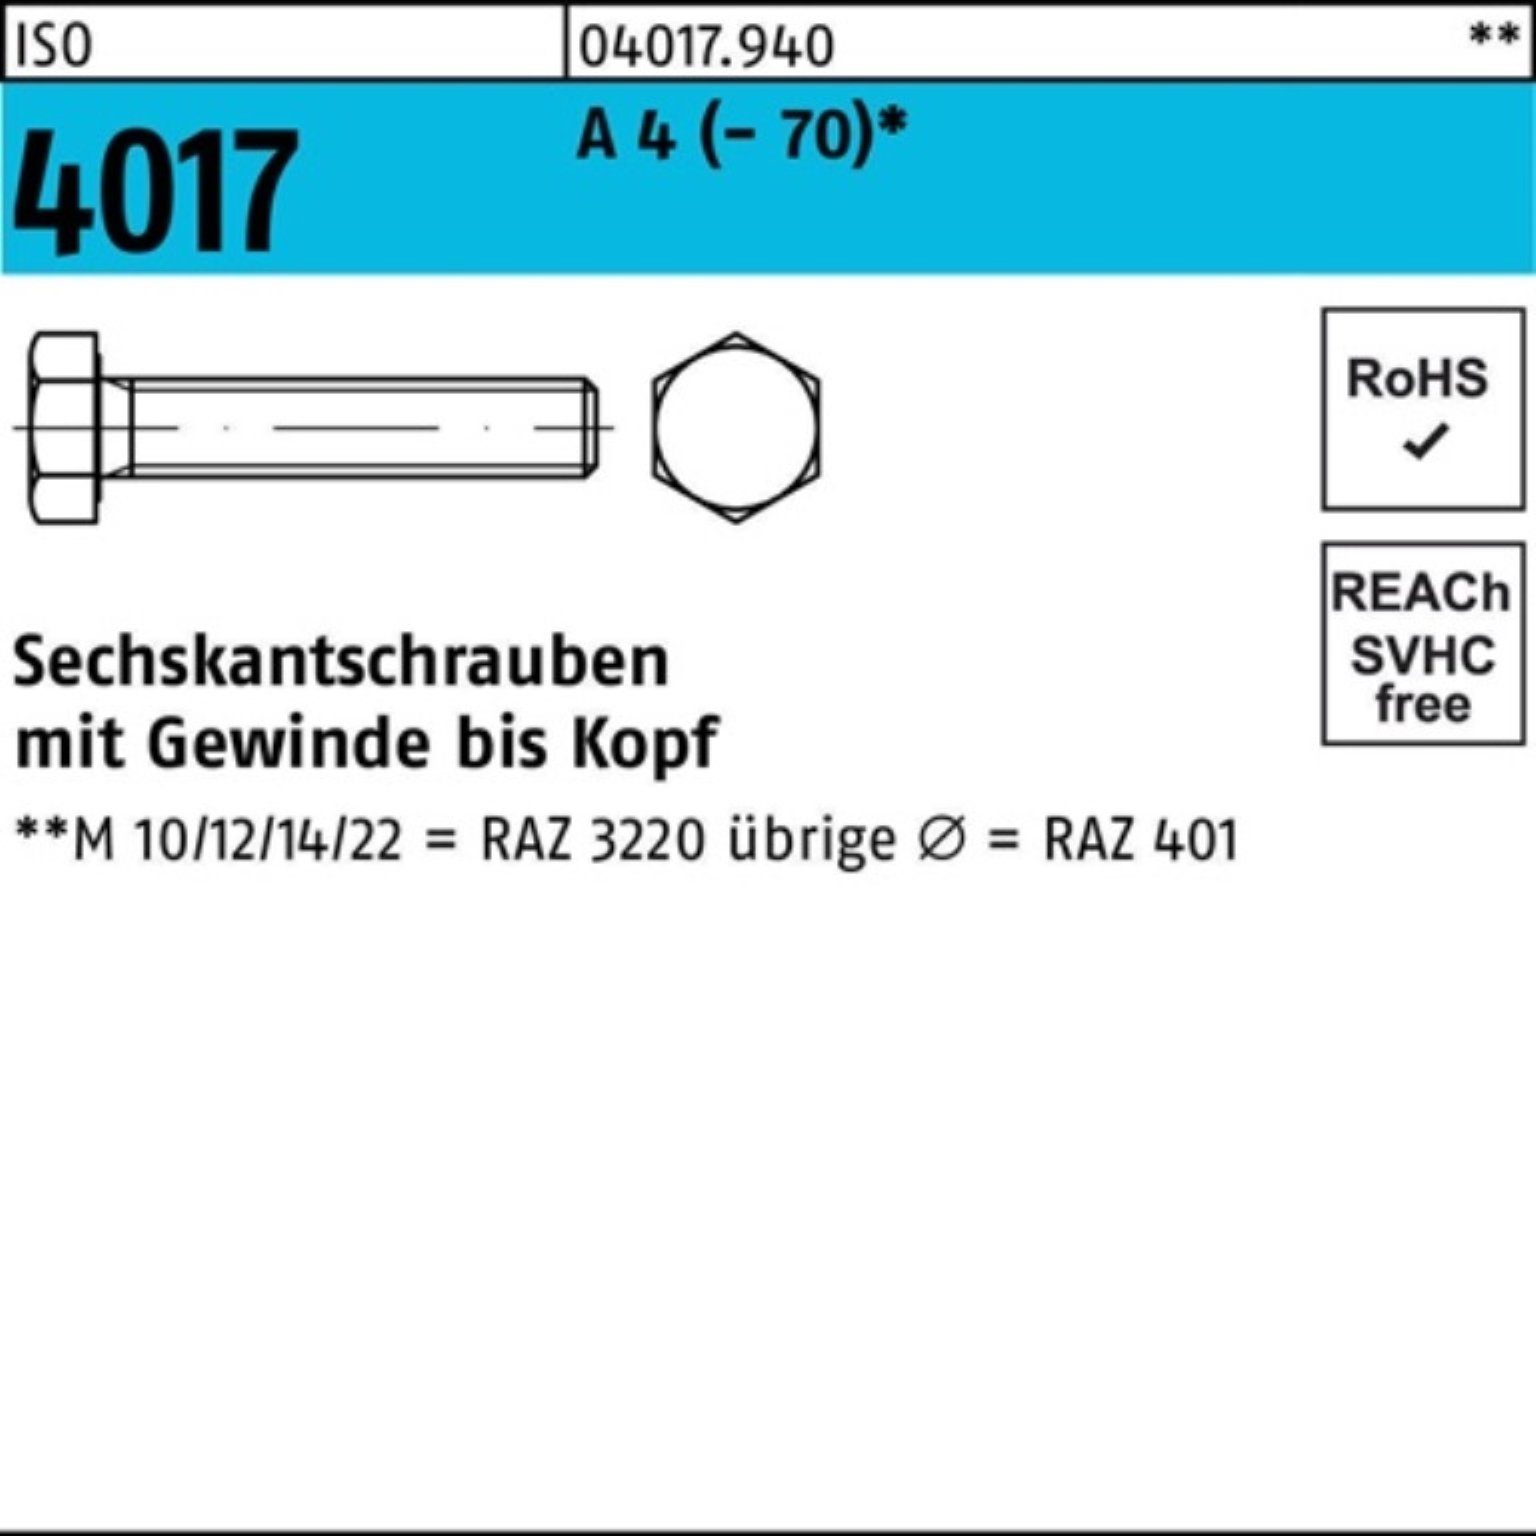 Bufab Sechskantschraube 200er Pack Sechskantschraube ISO 4017 VG M6x 20 A 4 (70) 200 Stück